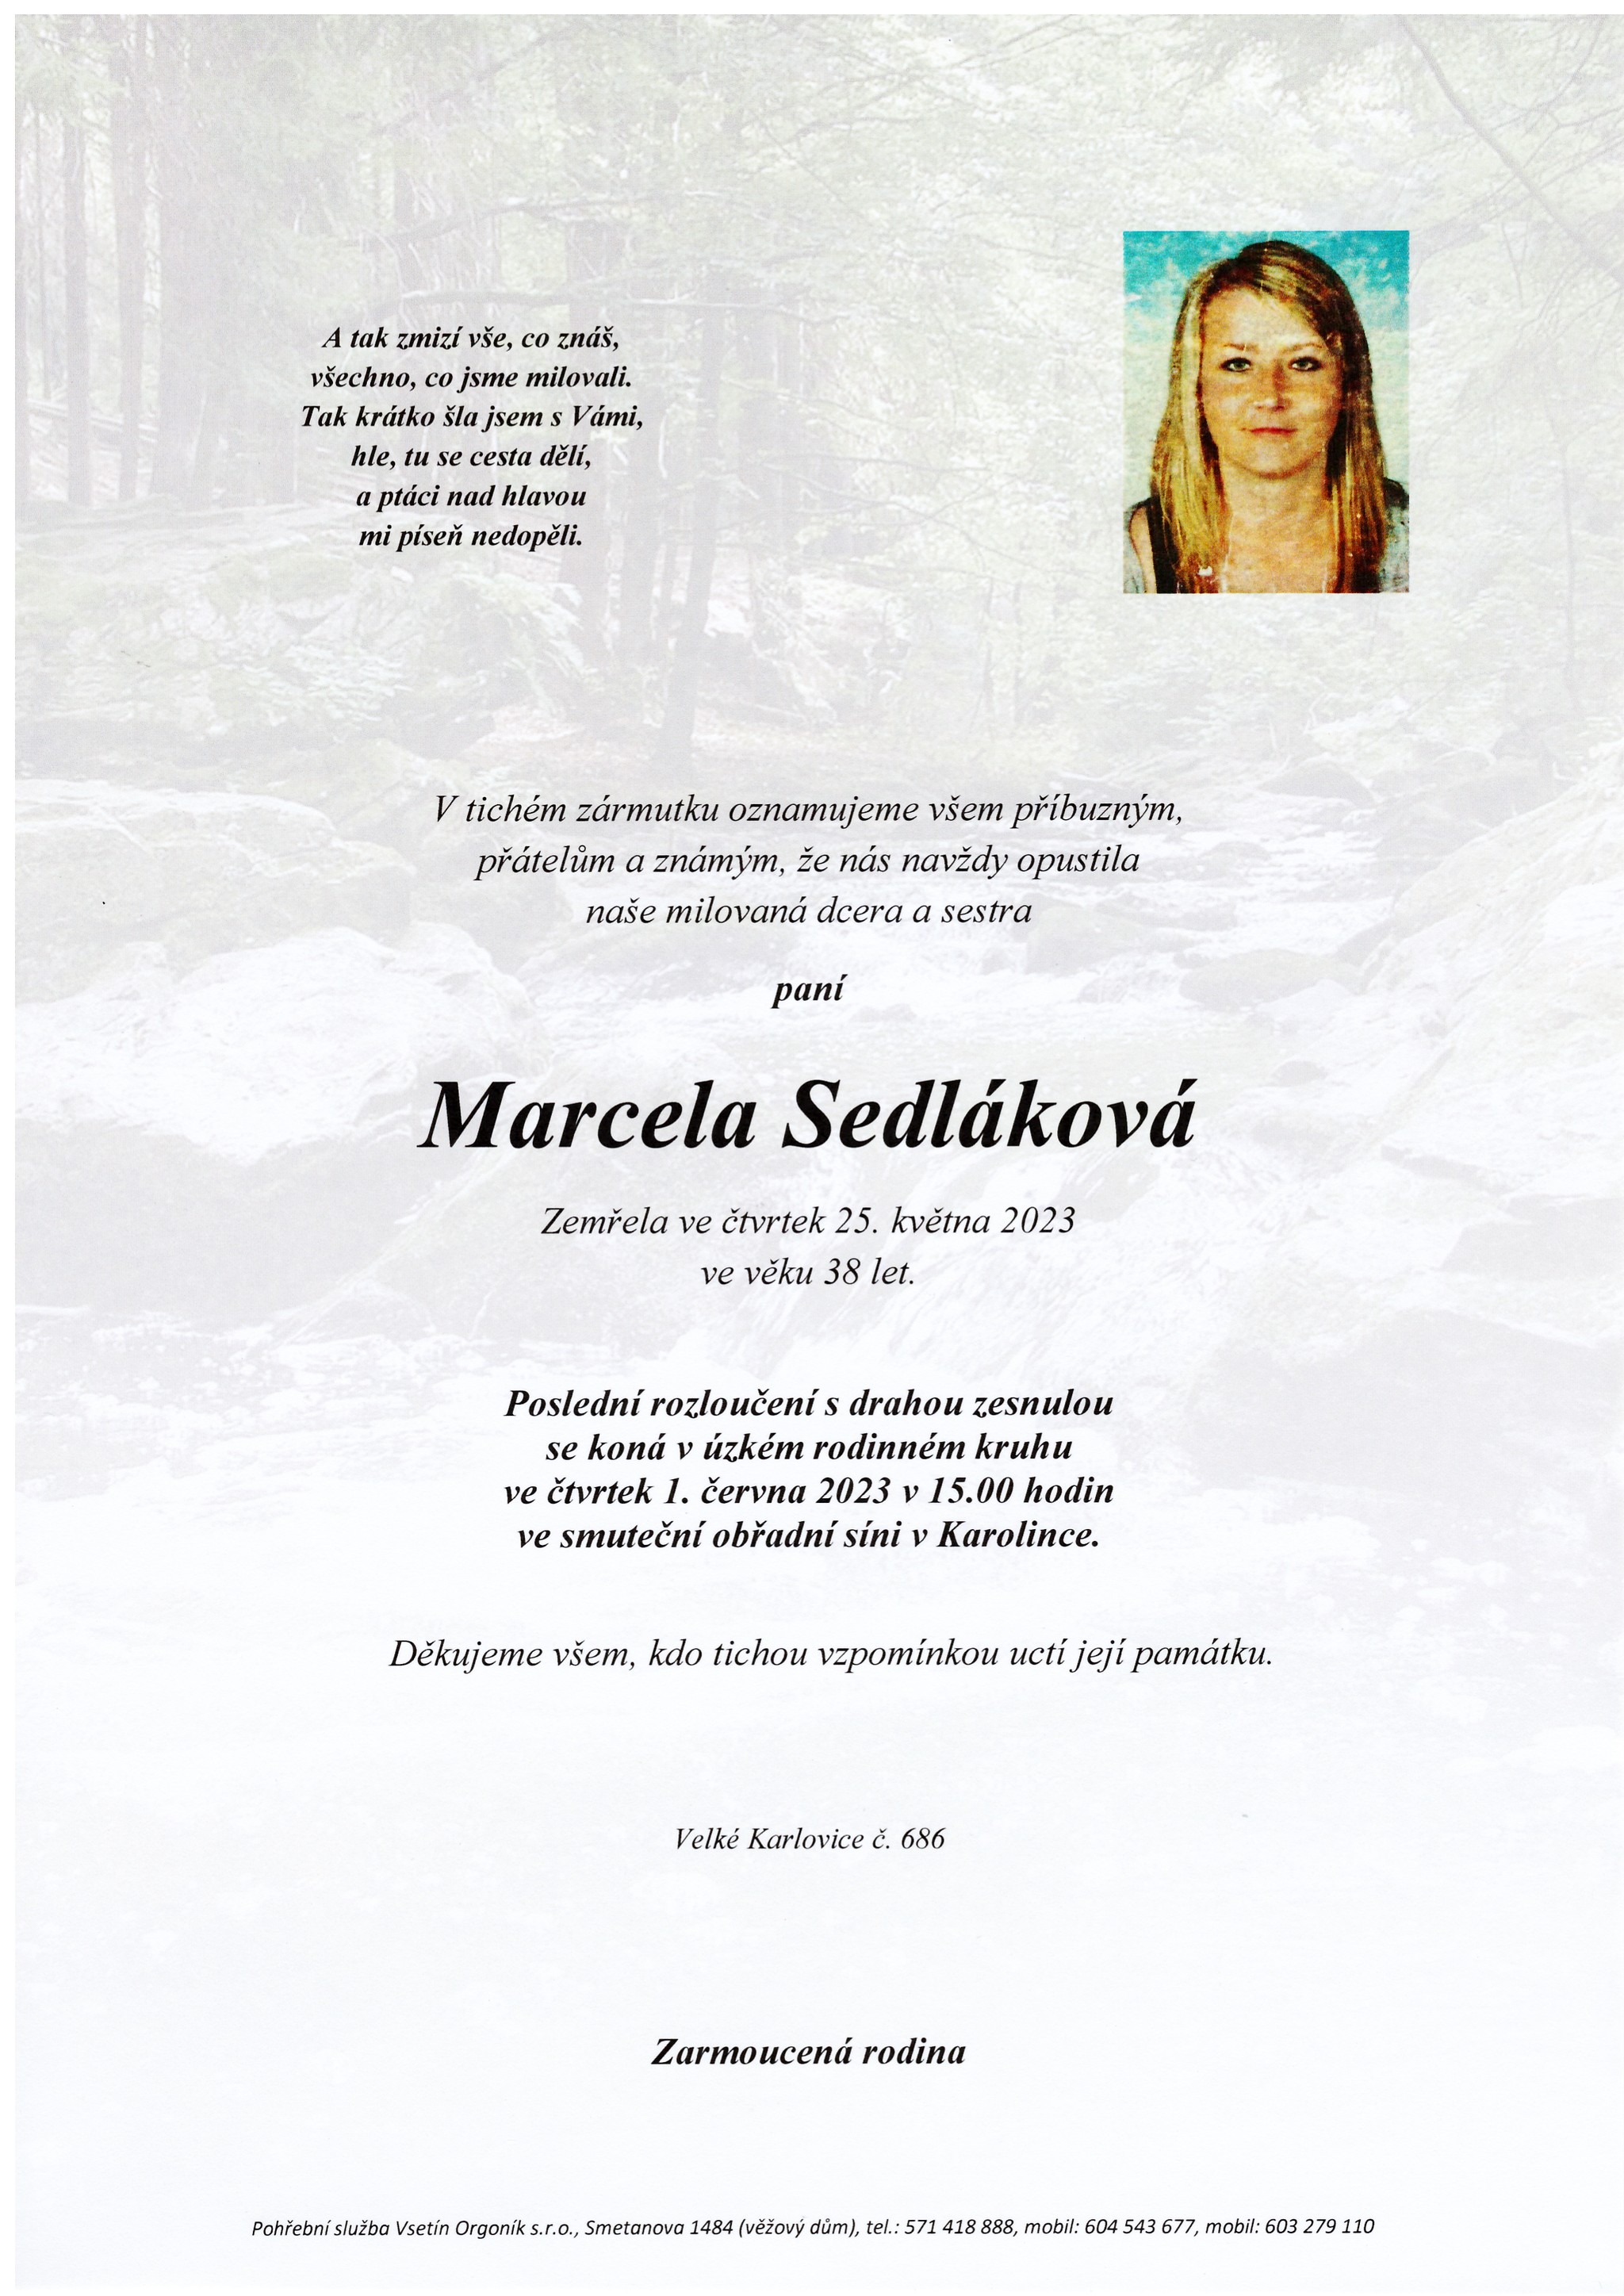 Marcela Sedláková